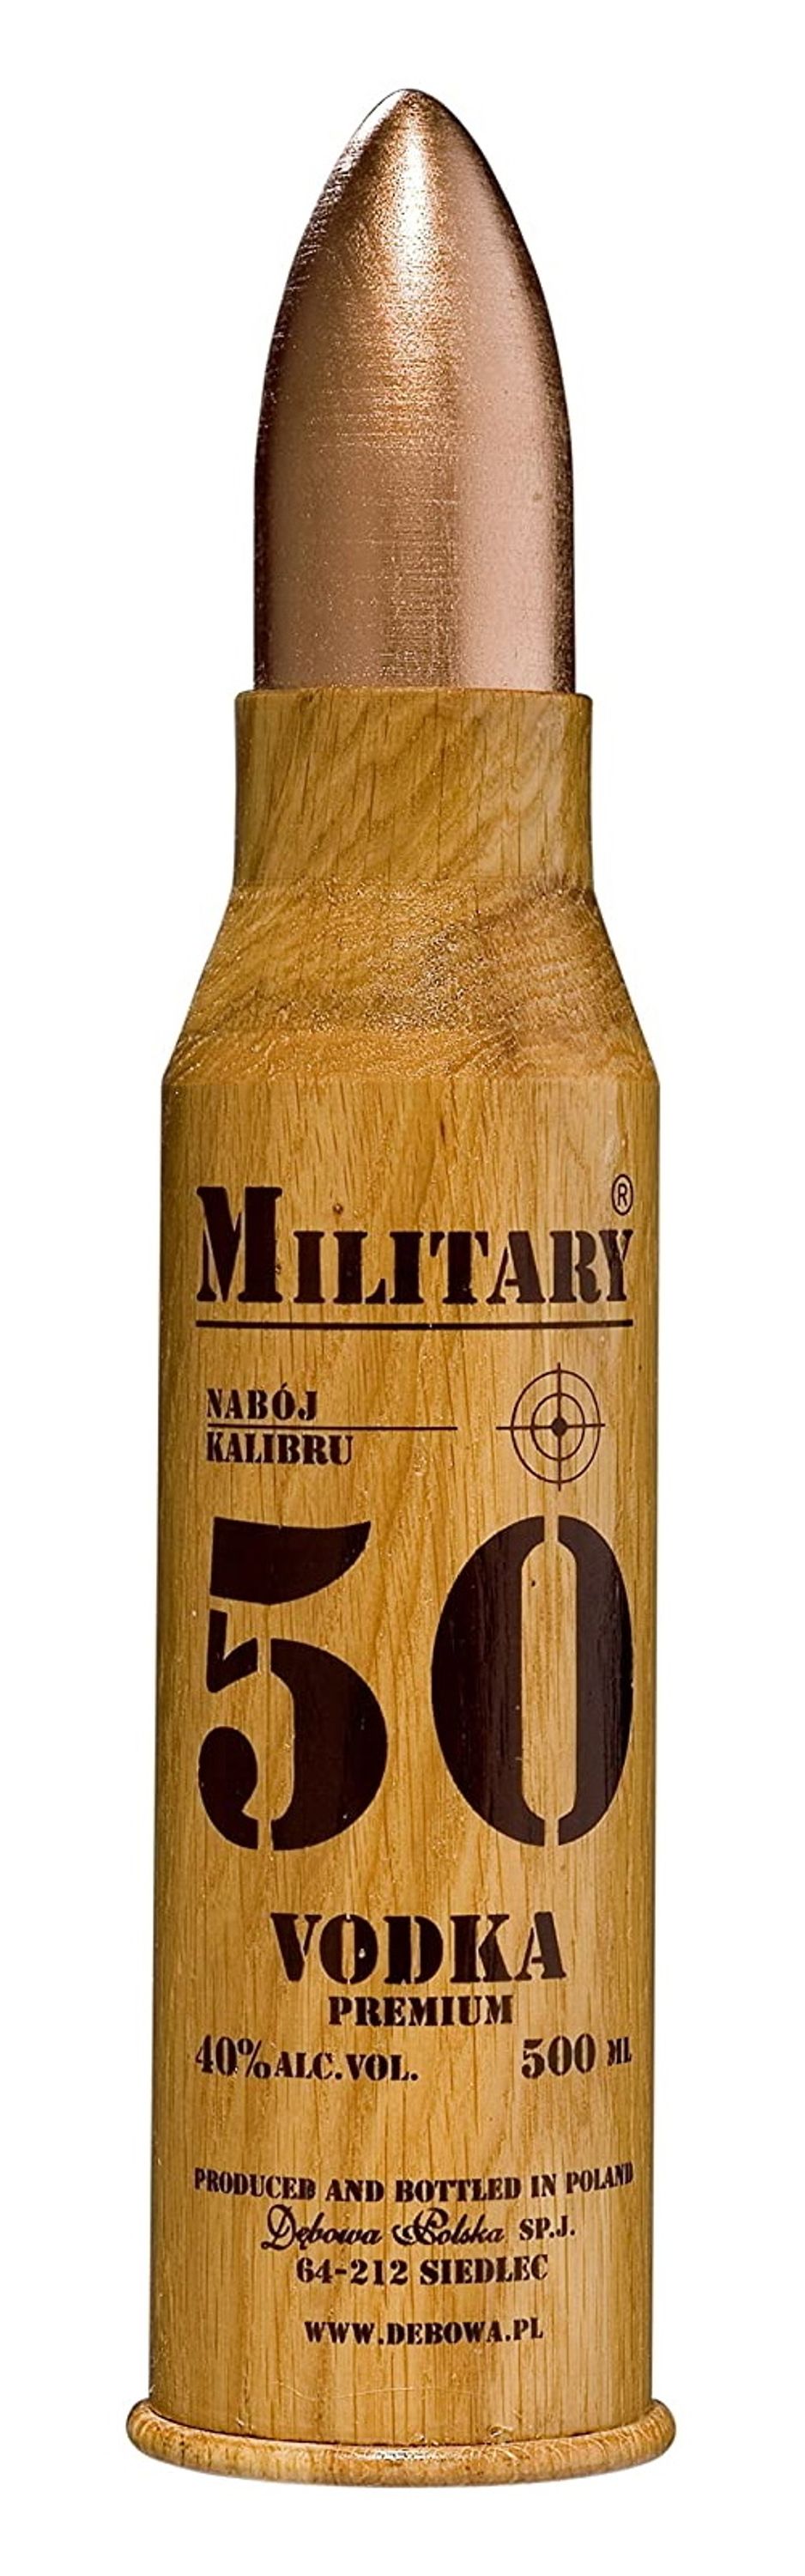 Debowa Military Vodka 0.5l, alc. 40% by volume, vodka Poland